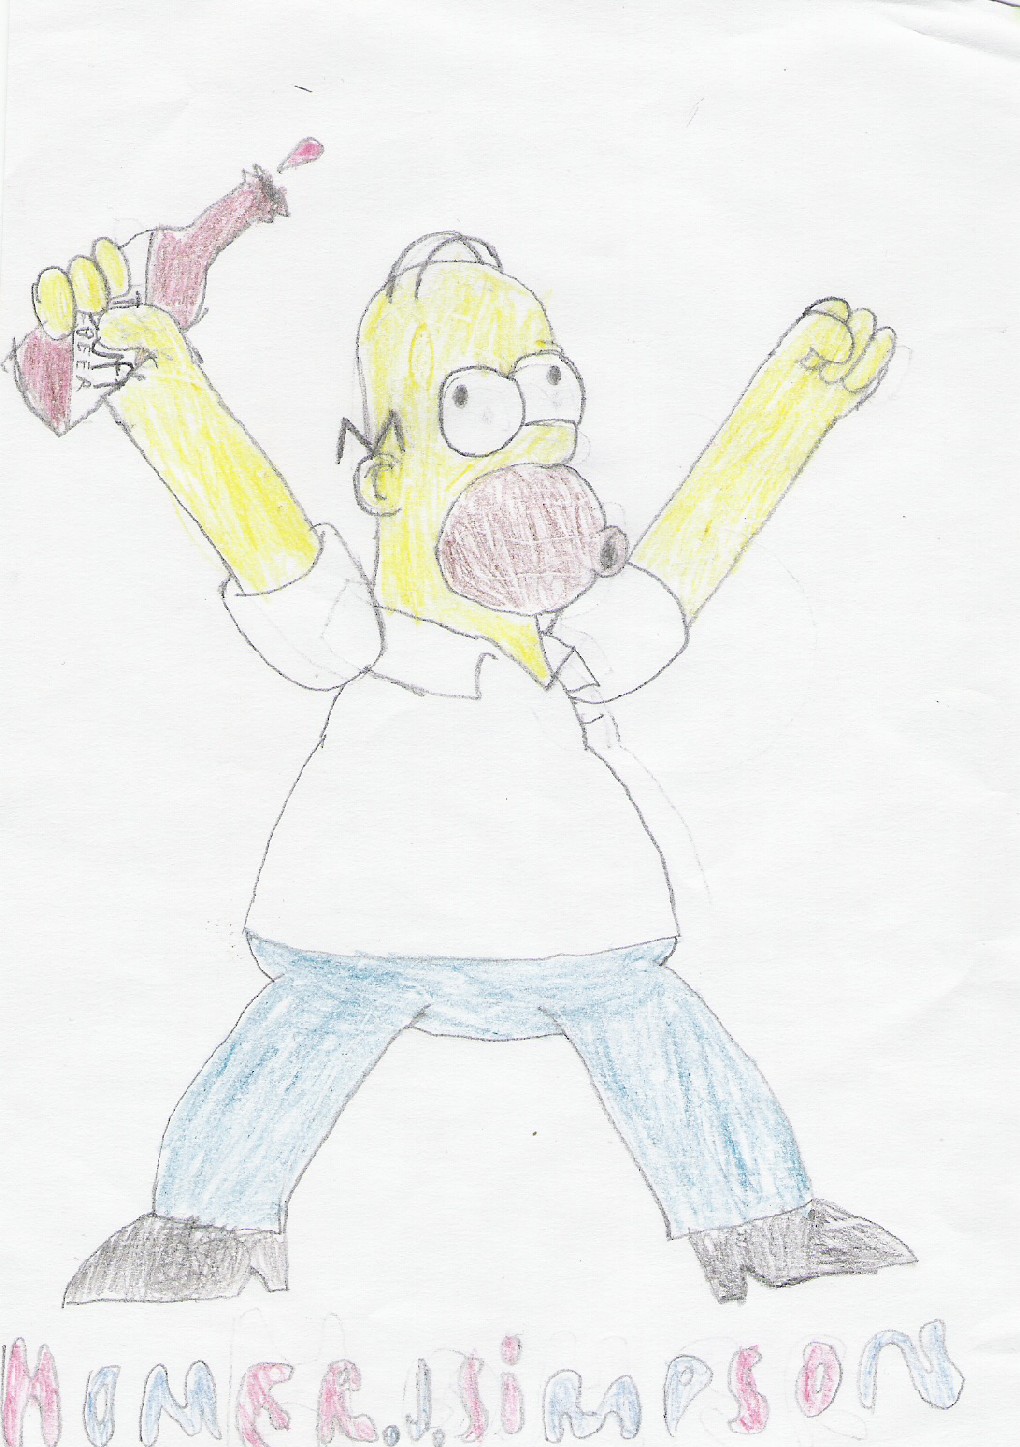 Homer J. Simpson by ilgeker